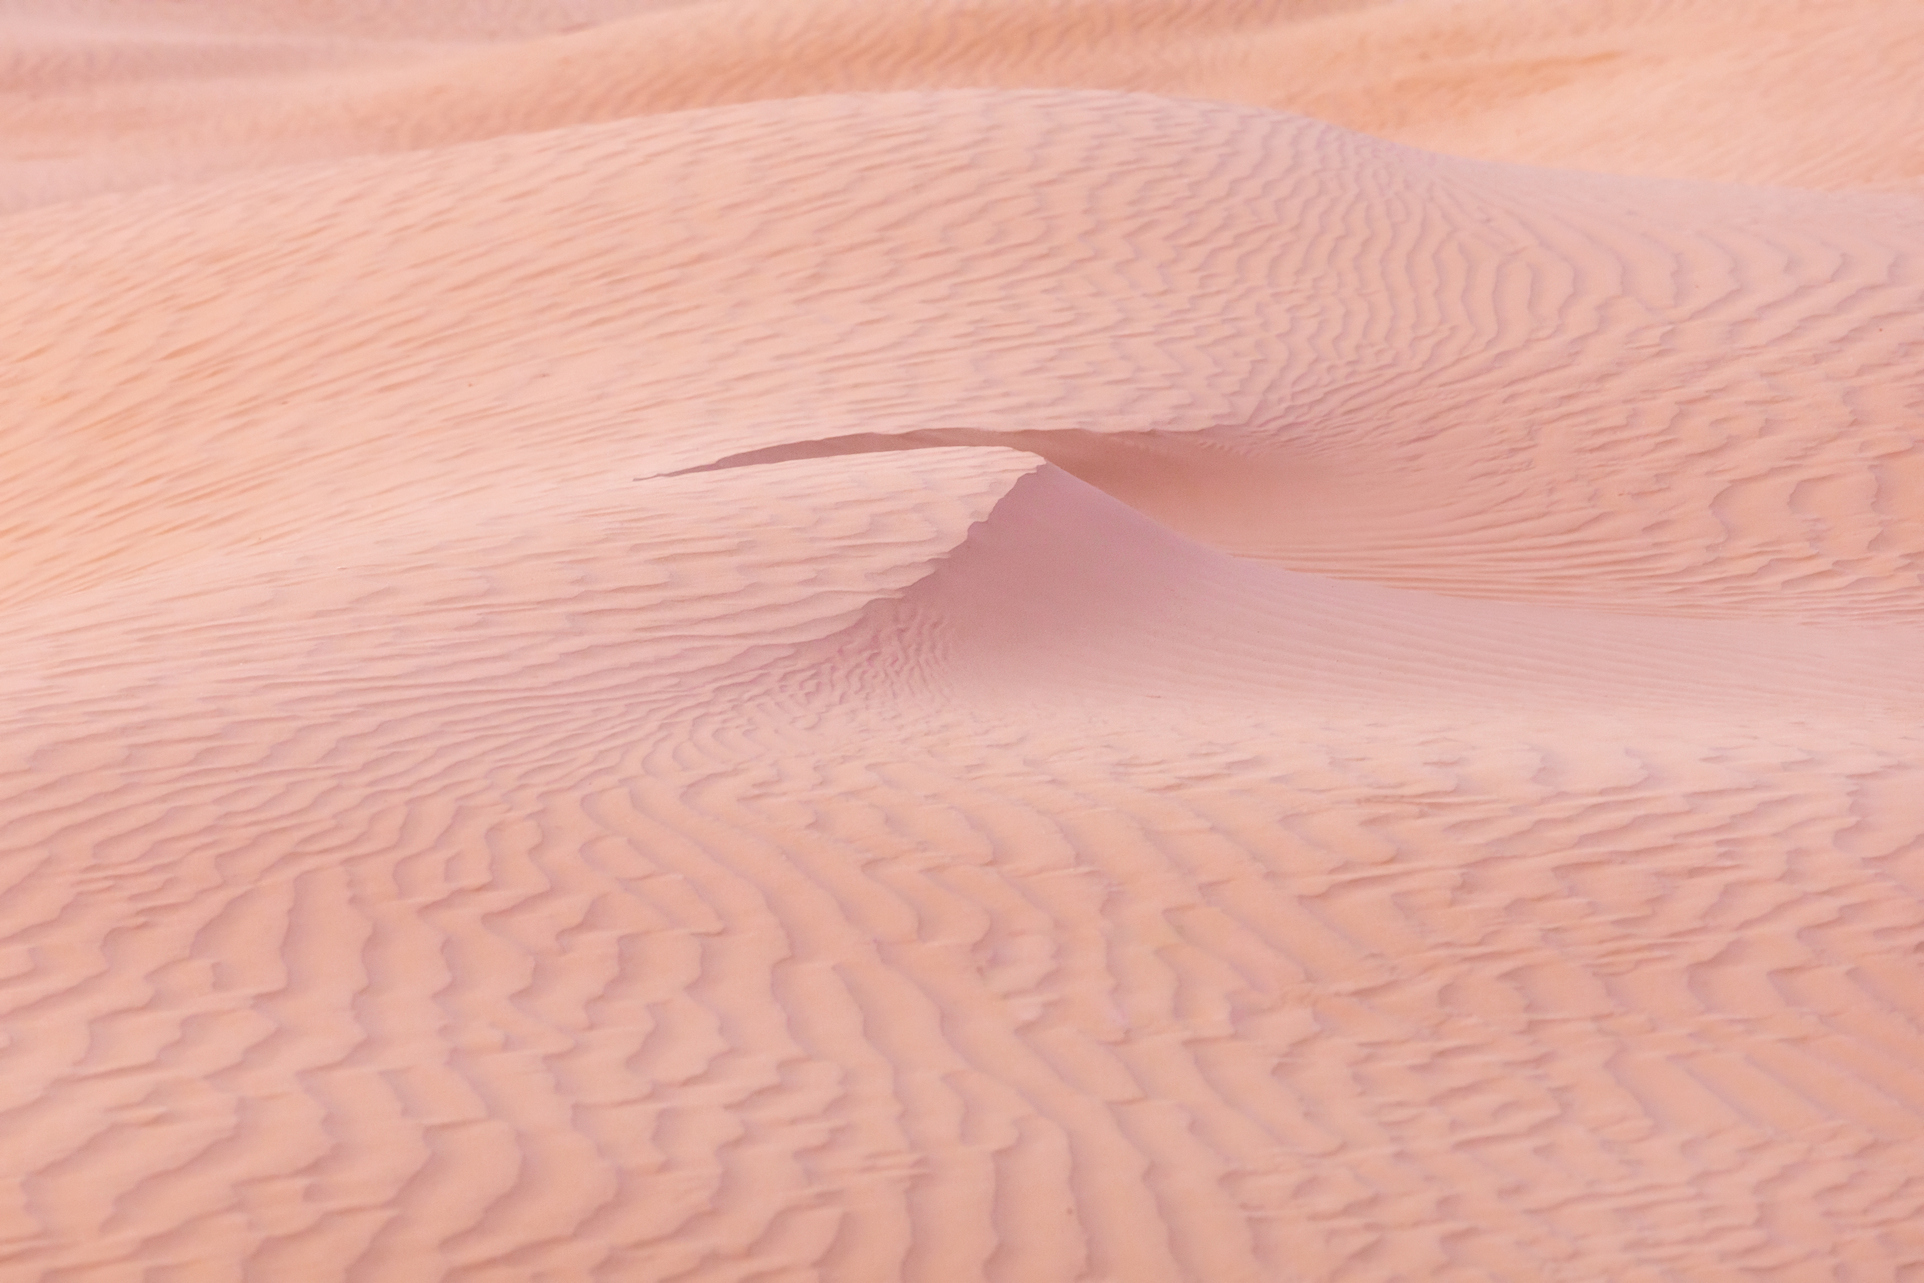 астрахань, астраханская область, пустыня, песок, дюны, закат, Влад Рябинин